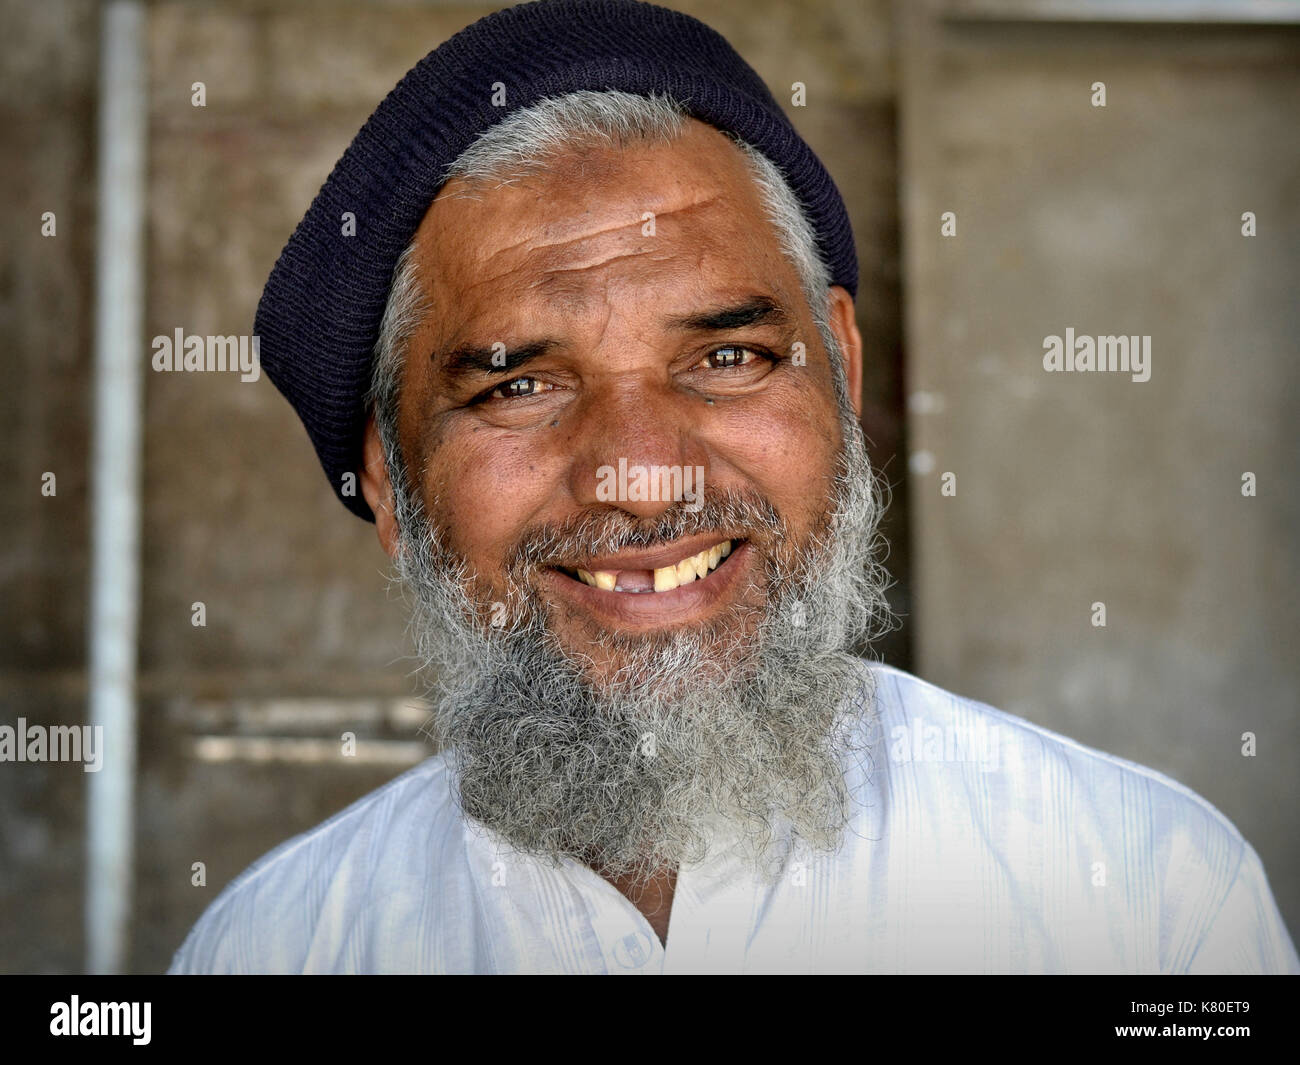 Homme musulman indien âgé avec barbe islamique, fossé dentaire et bosse de prière musulmane (zéba) sur son front souriant pour la caméra. Banque D'Images